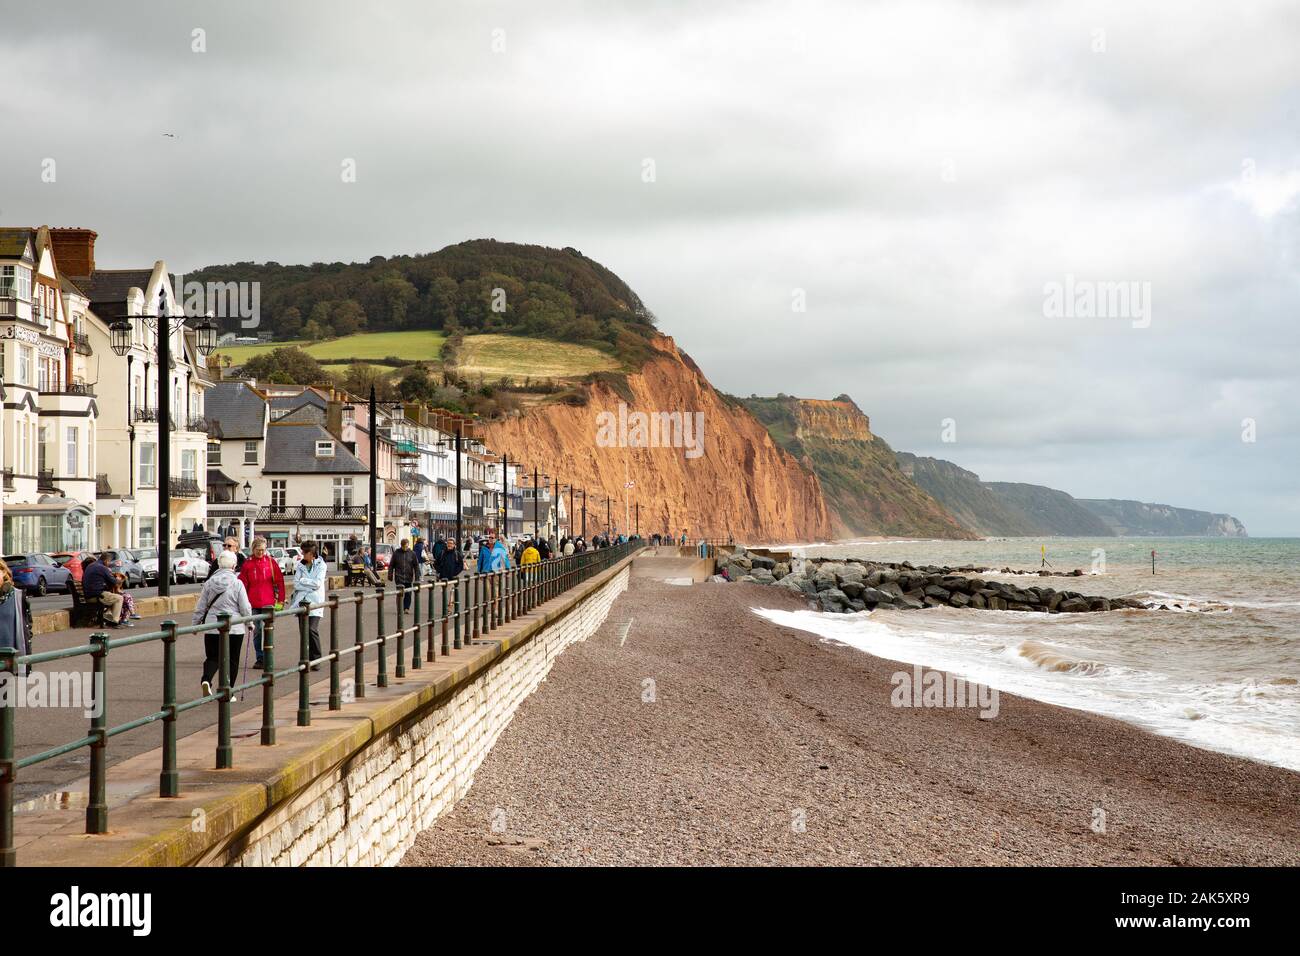 Le front de mer dans la ville de Sidmouth, Devon, Royaume-Uni Banque D'Images